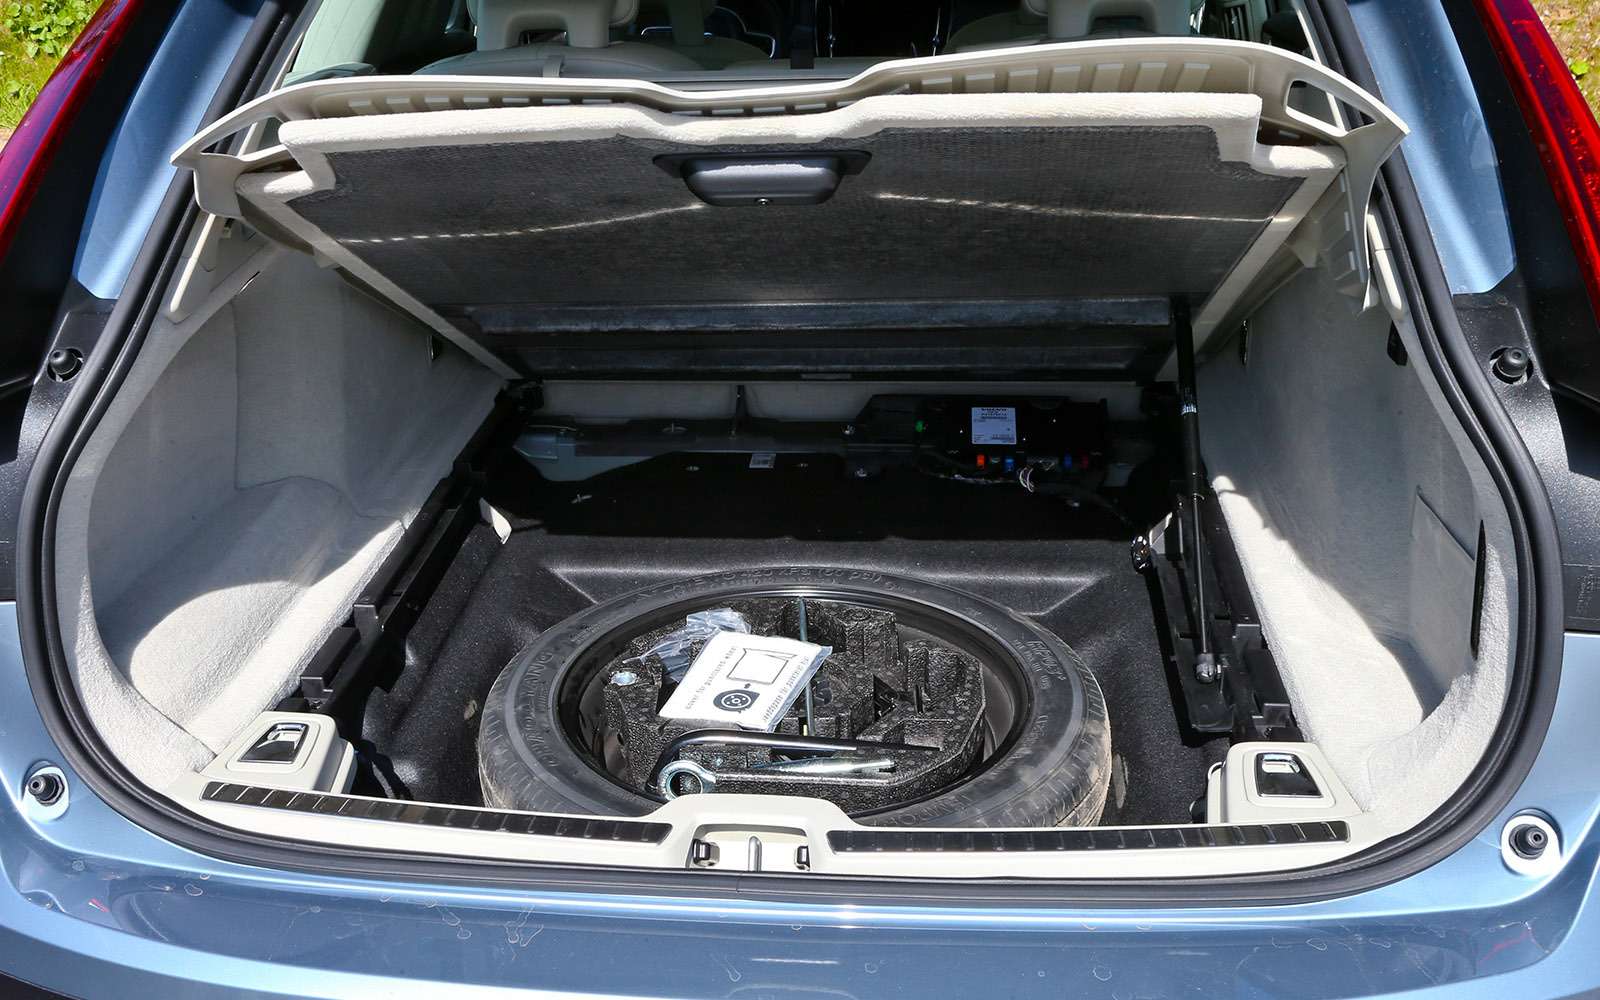 Габариты V90 относительно XC70 увеличились, а багажник… стал меньше. Рулонная штора отделяет салон от багажного отсека.  По правому борту – клавиши складывания спинок задних сидений.